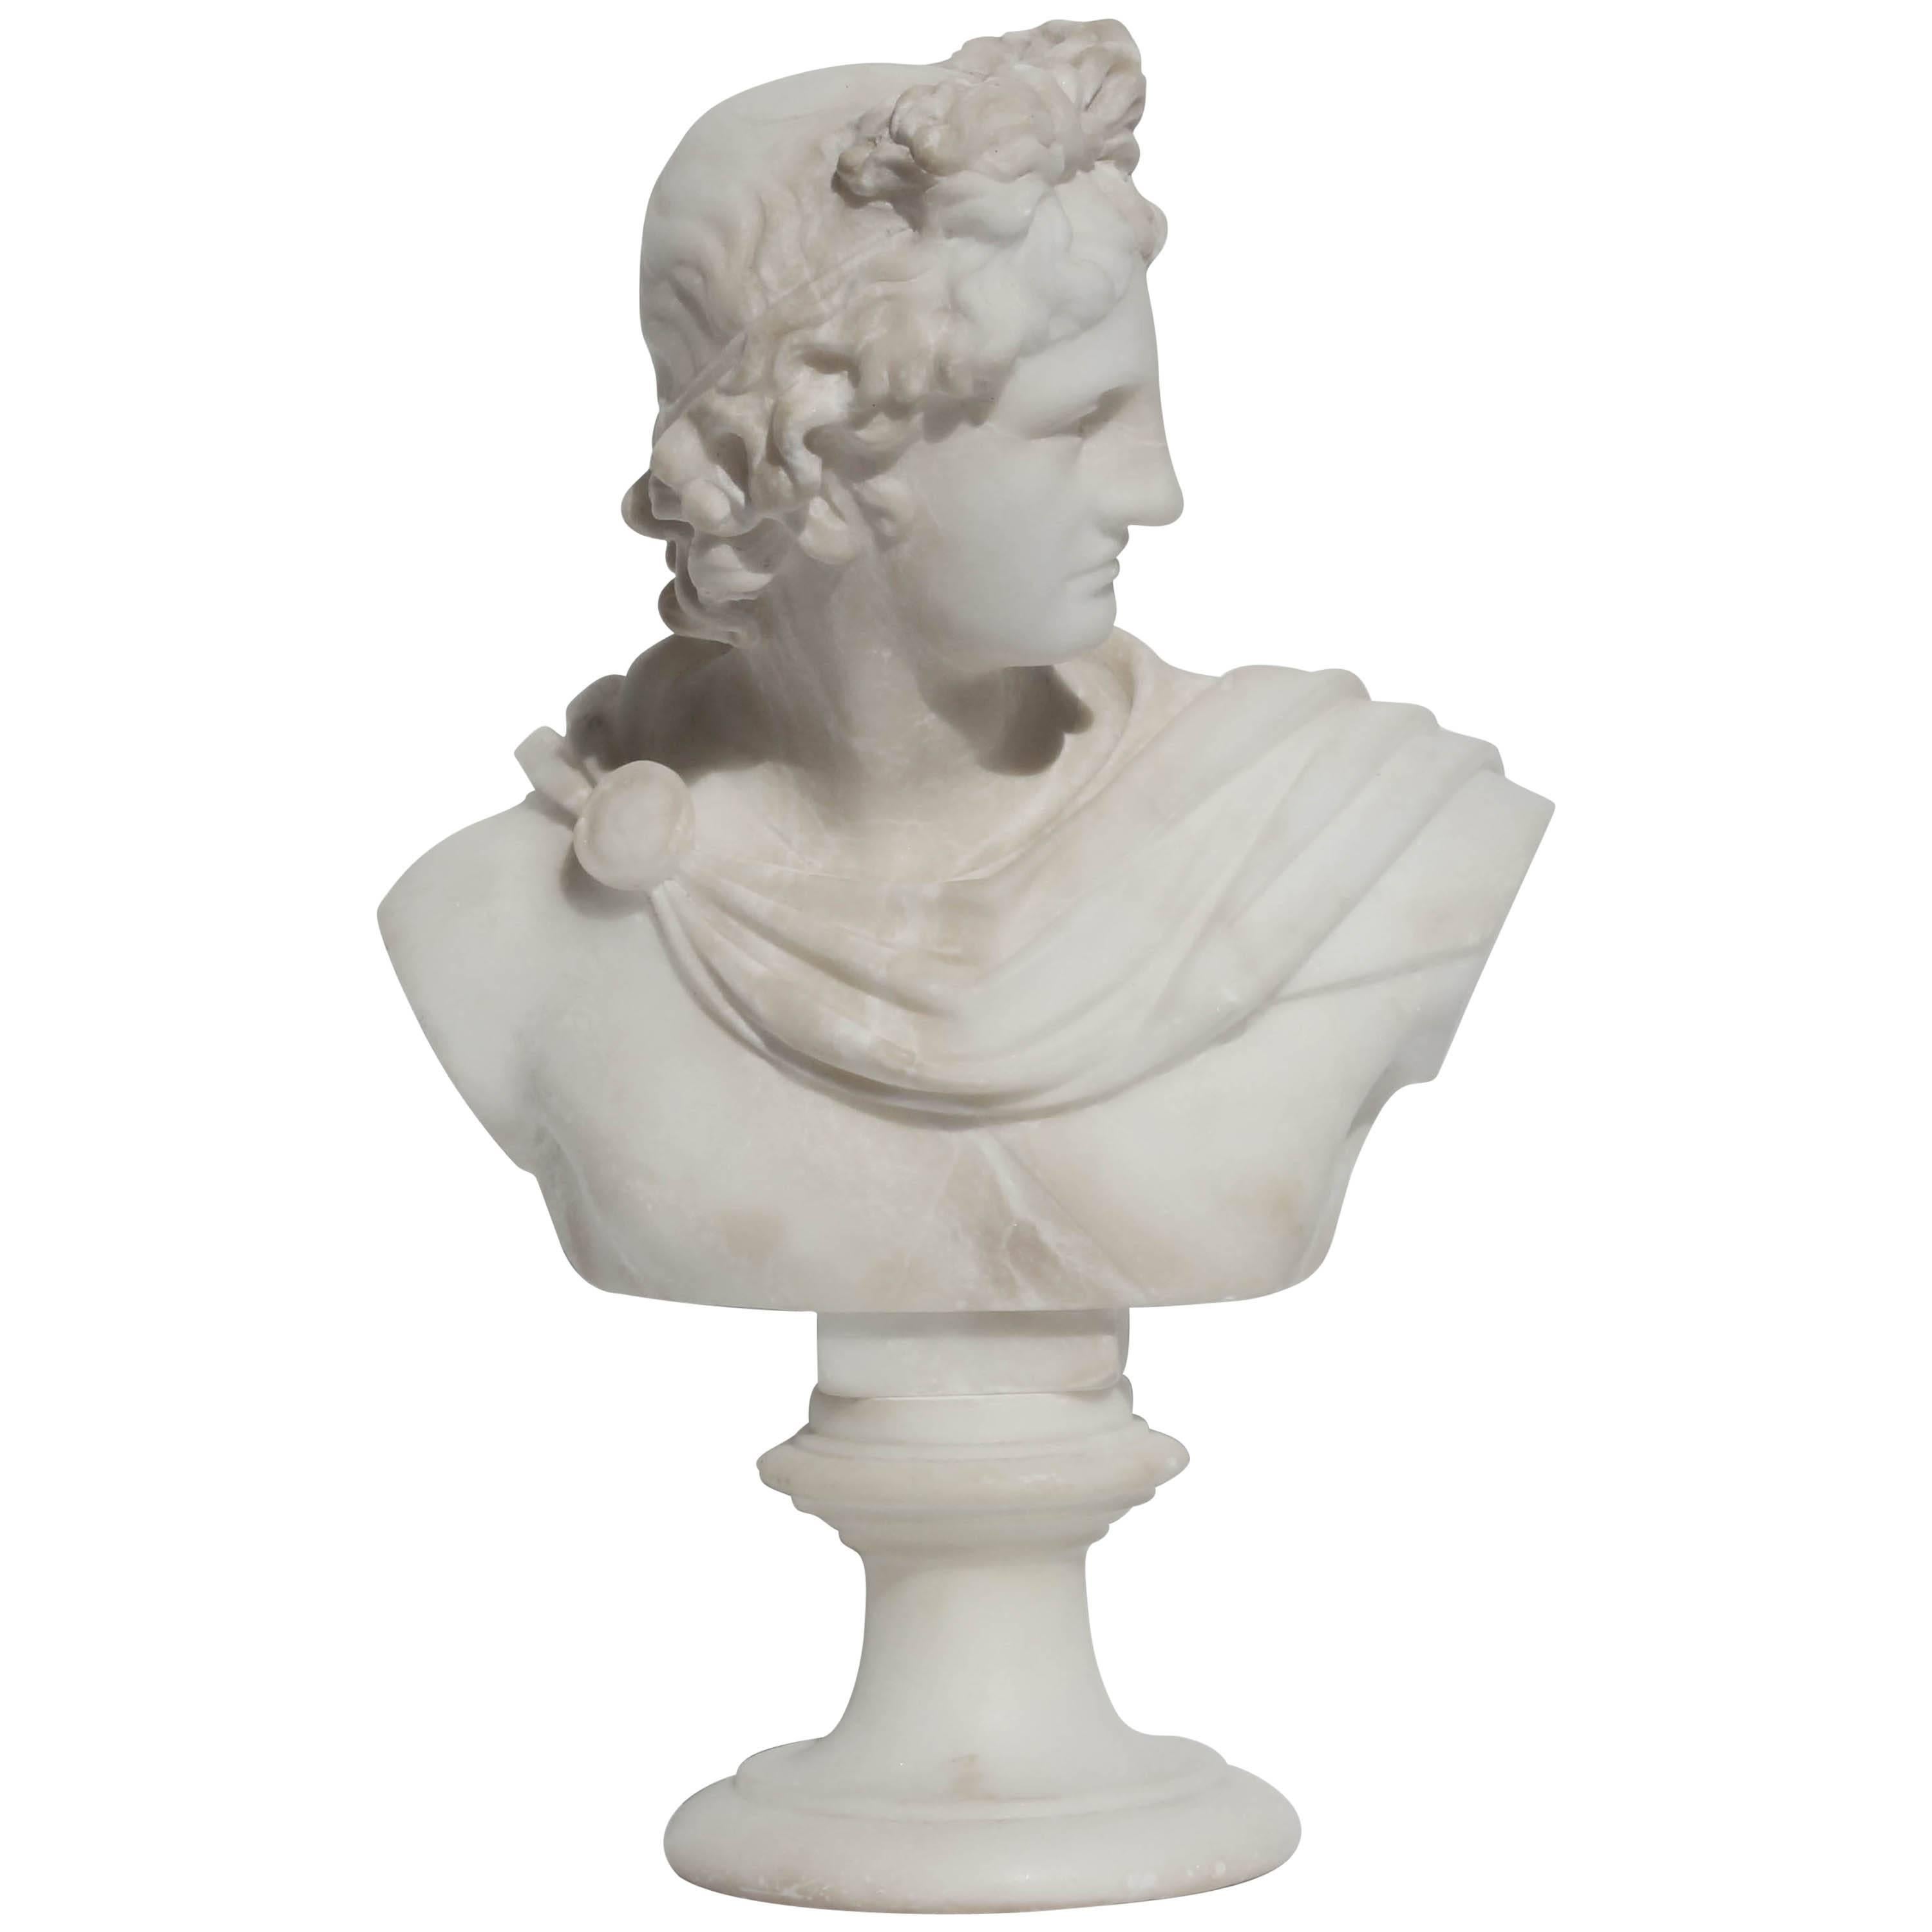 Sculpture of Apollo